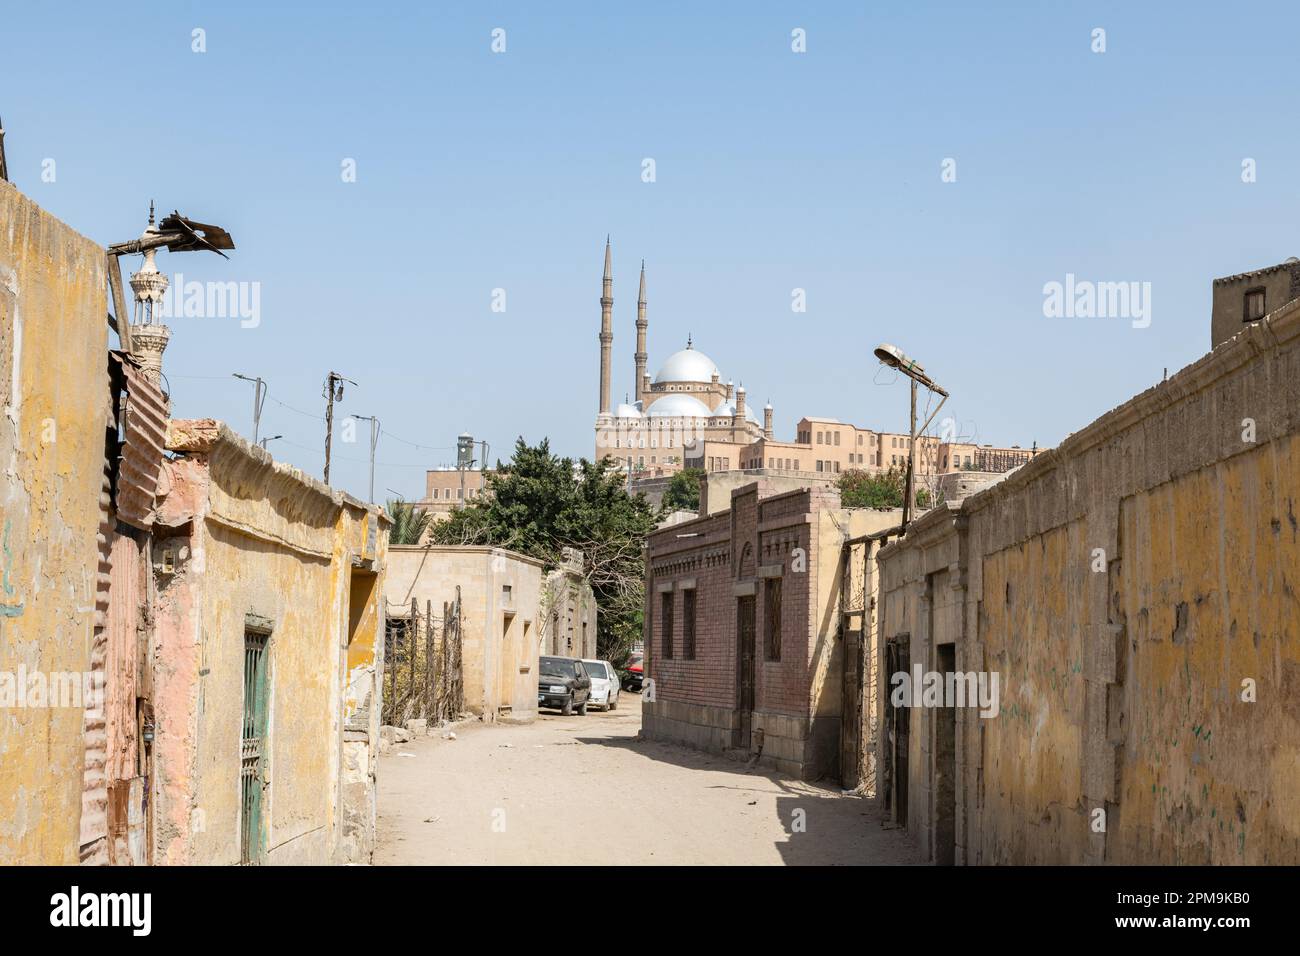 Eine Straße in der Kairoer Nekropolis / Stadt der Toten mit Friedhof und Mausoleum in Kairo, Ägypten Stockfoto